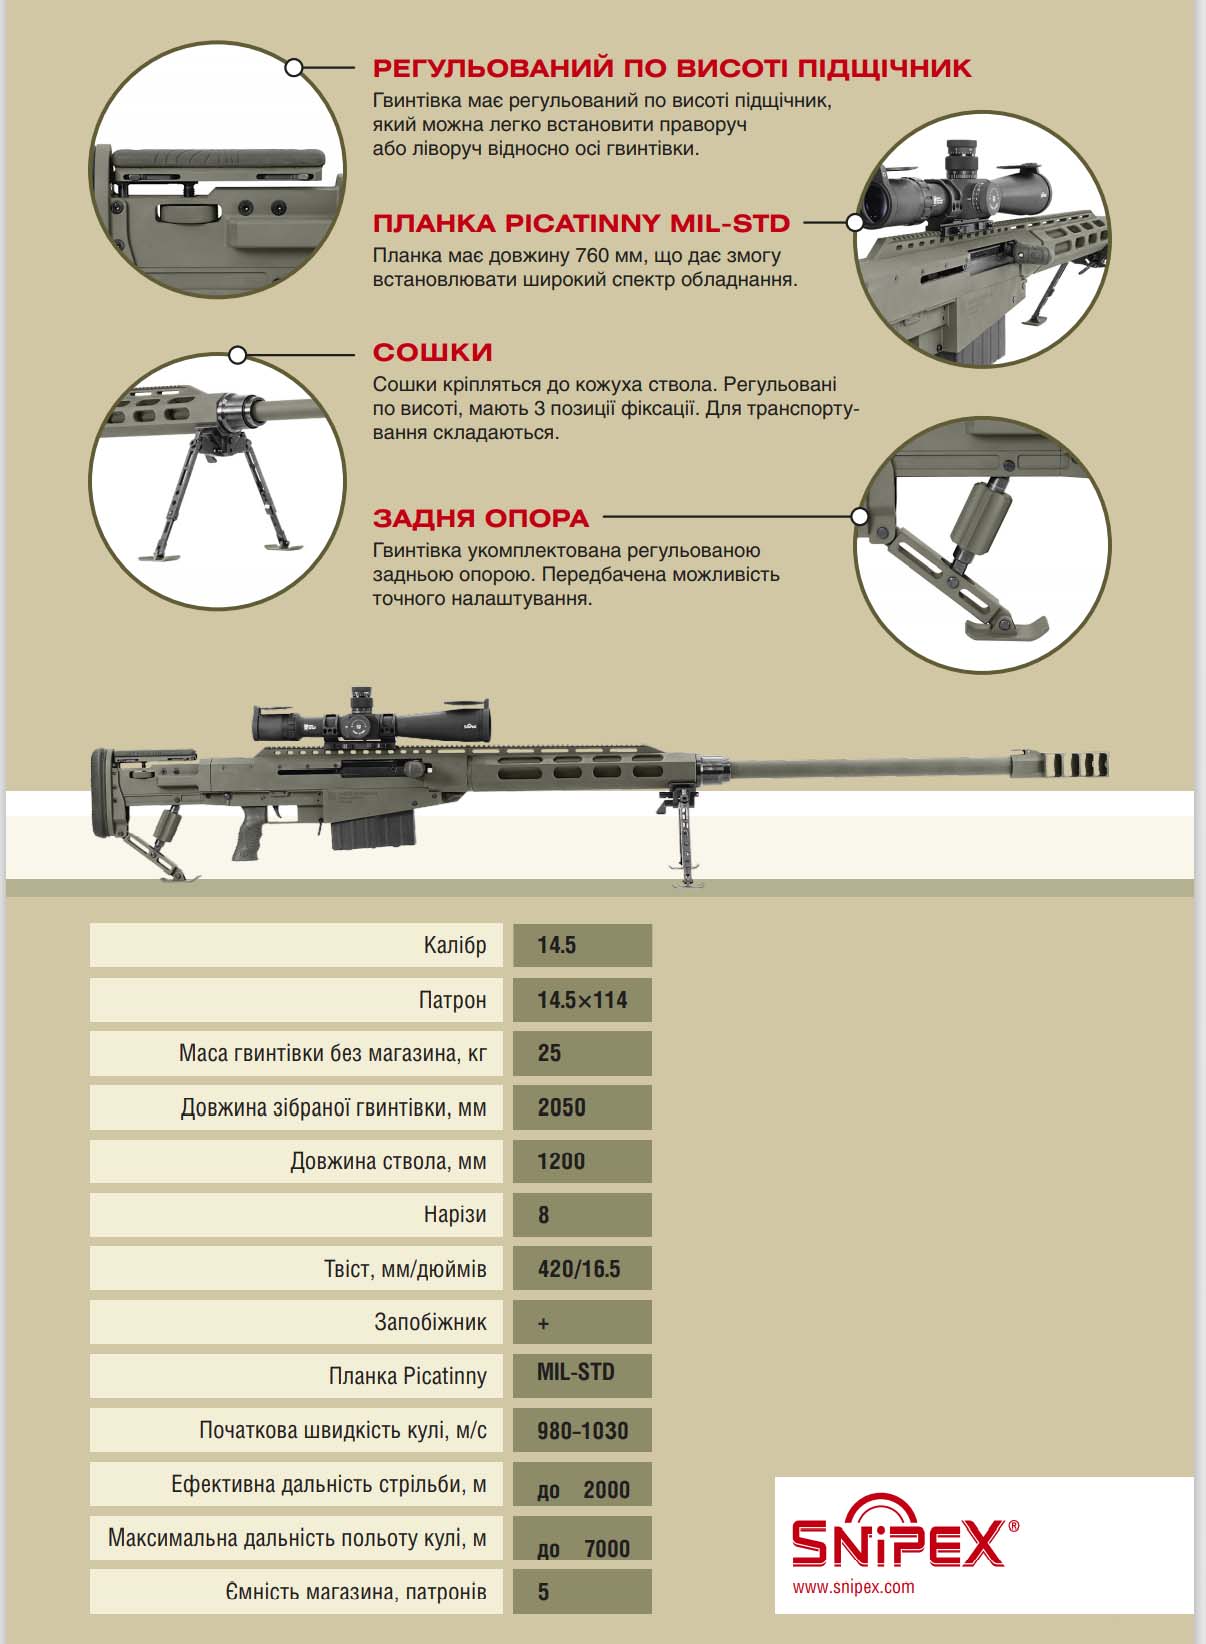 ТТХ самозарядної далекобійної великокаліберної антиматеріальної гвинтівки калібру 14,5×114 Snipex MONOMAKH